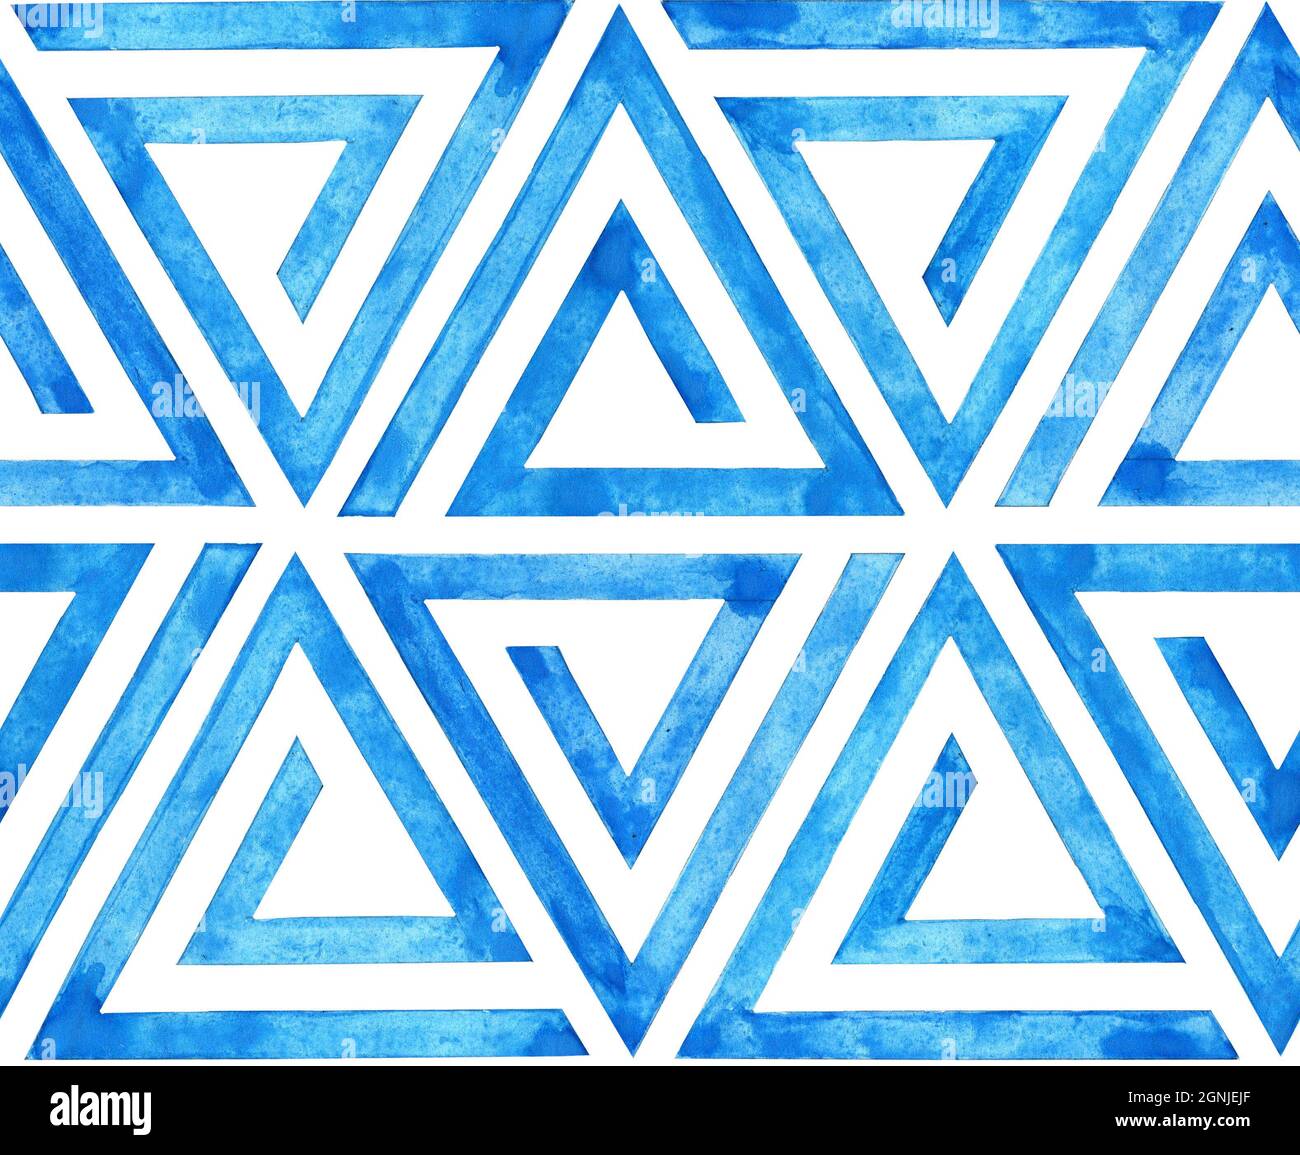 Aquarelle illustration de lignes géométriques bleues motif sans couture en forme de triangle. Un arrière-plan sans fin de répétition de triangles isolés o Banque D'Images